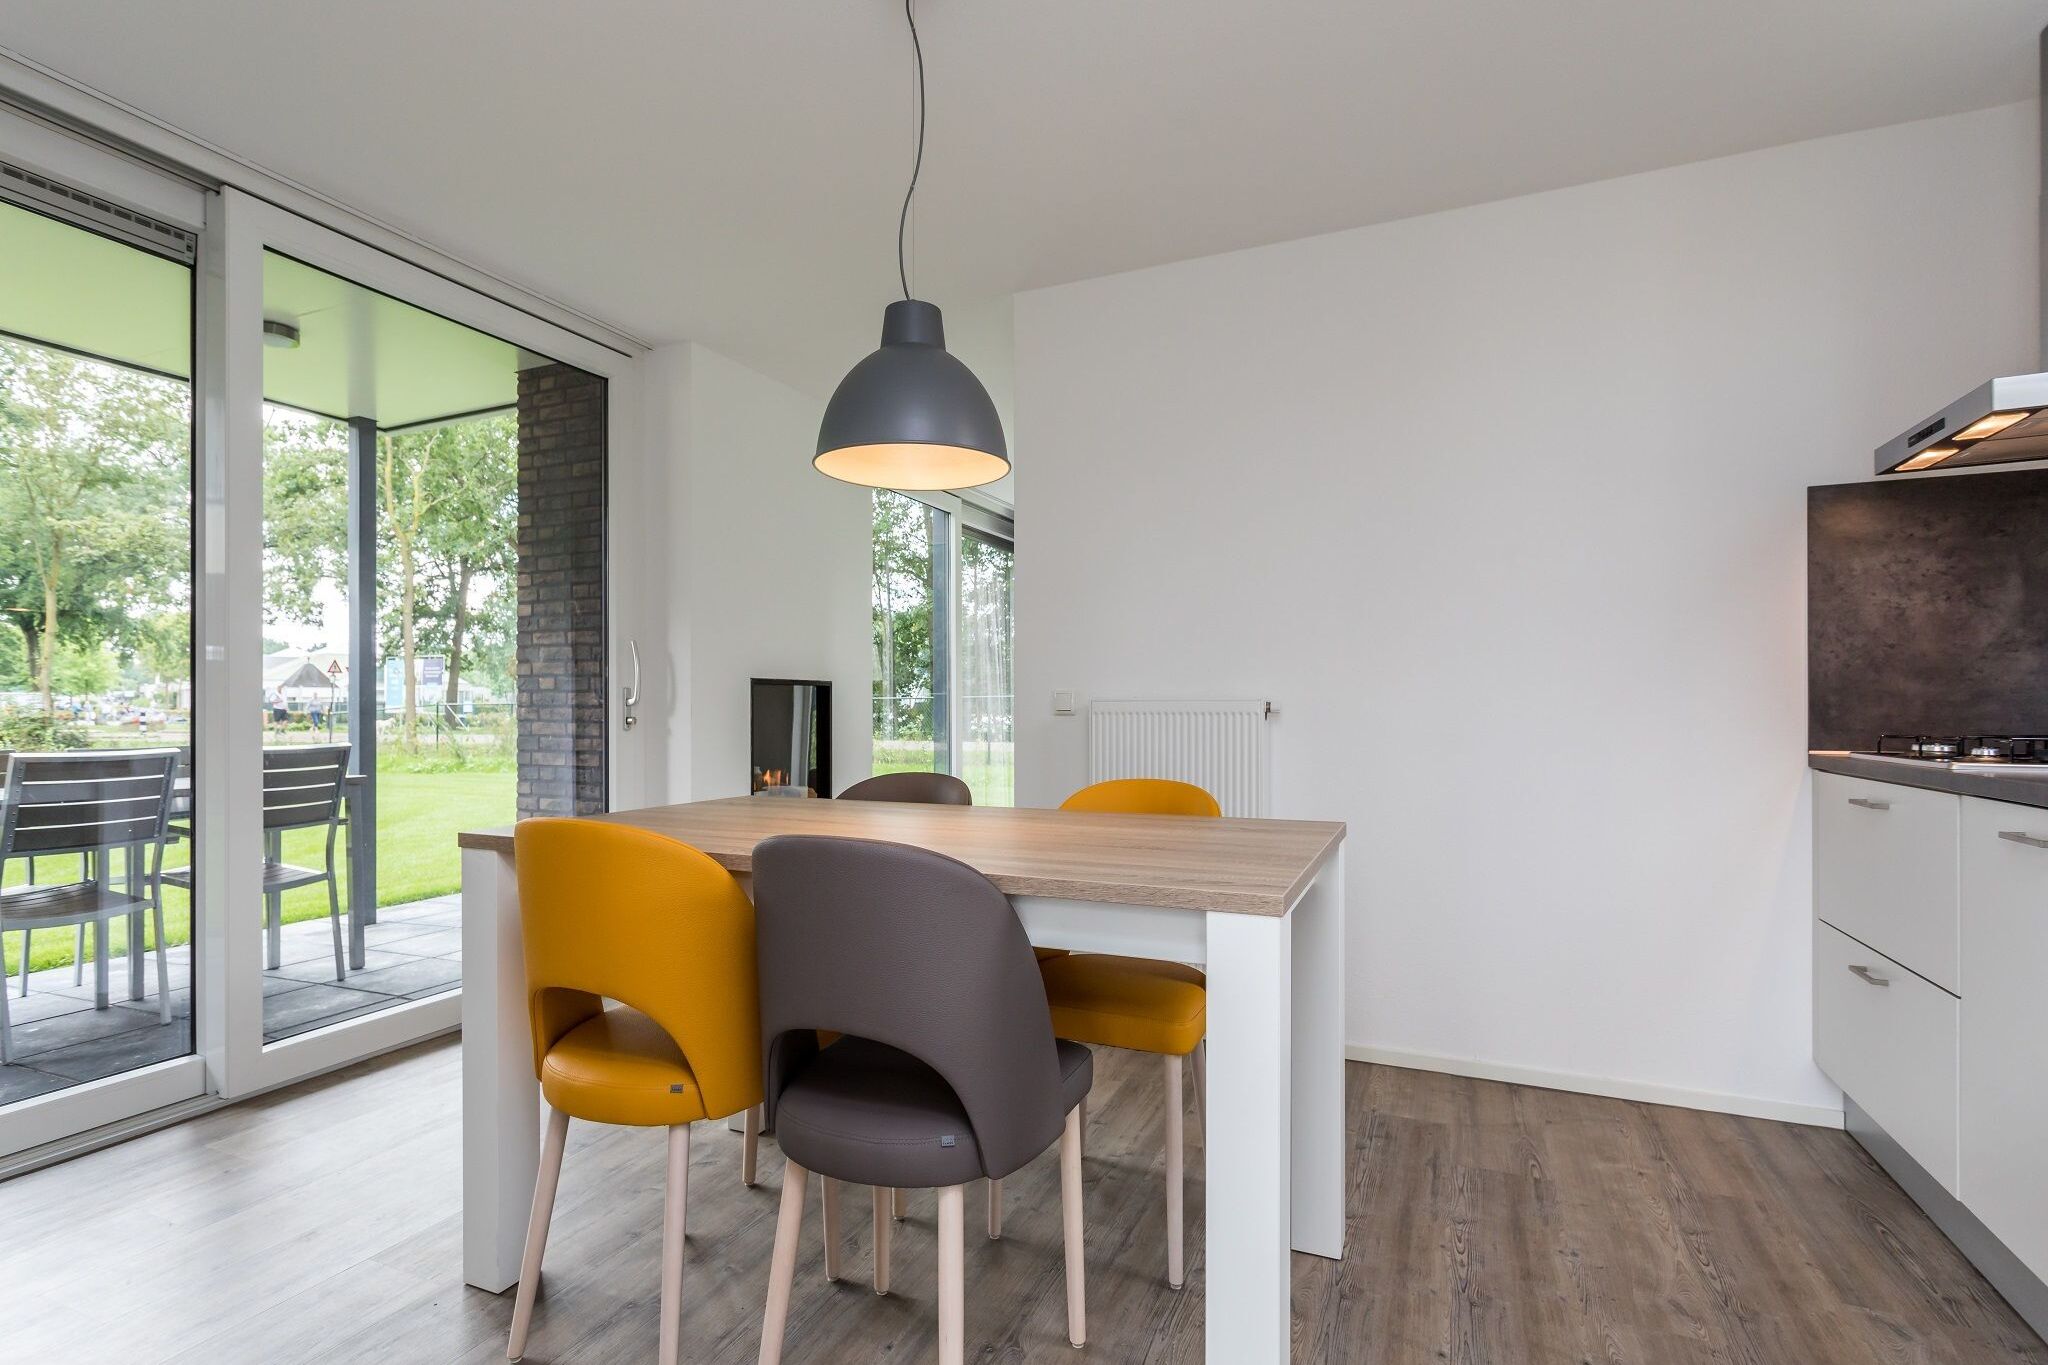 Modern and stylish villa in Limburg